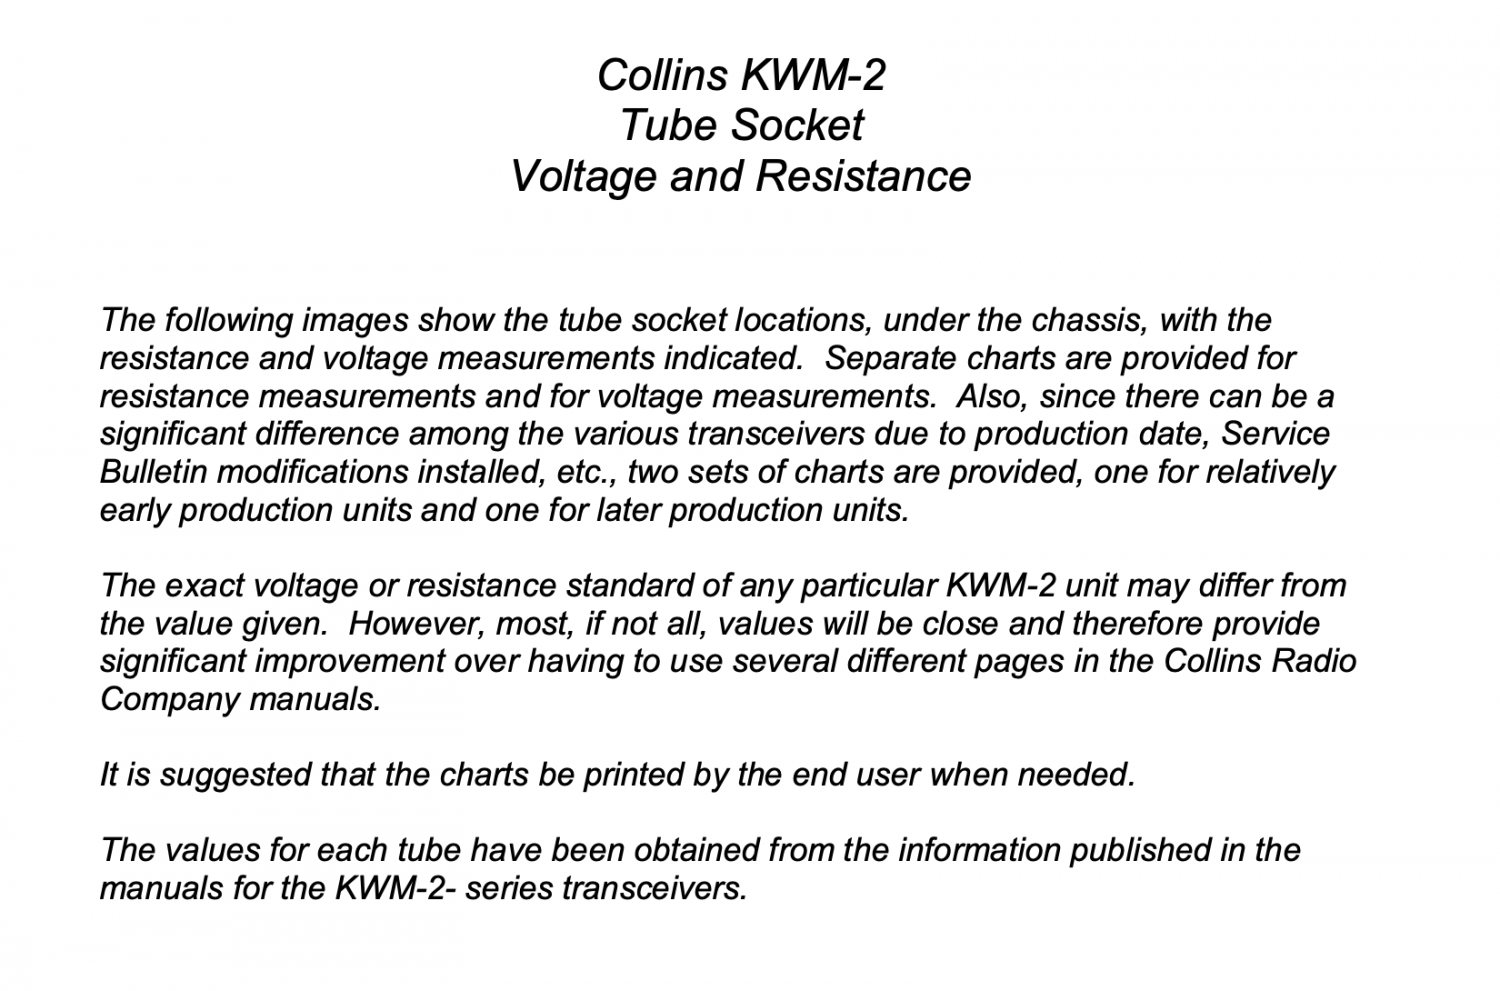 Collins KWM-2 Transceiver - Tube Socket Voltage & Resistance (K9STH)